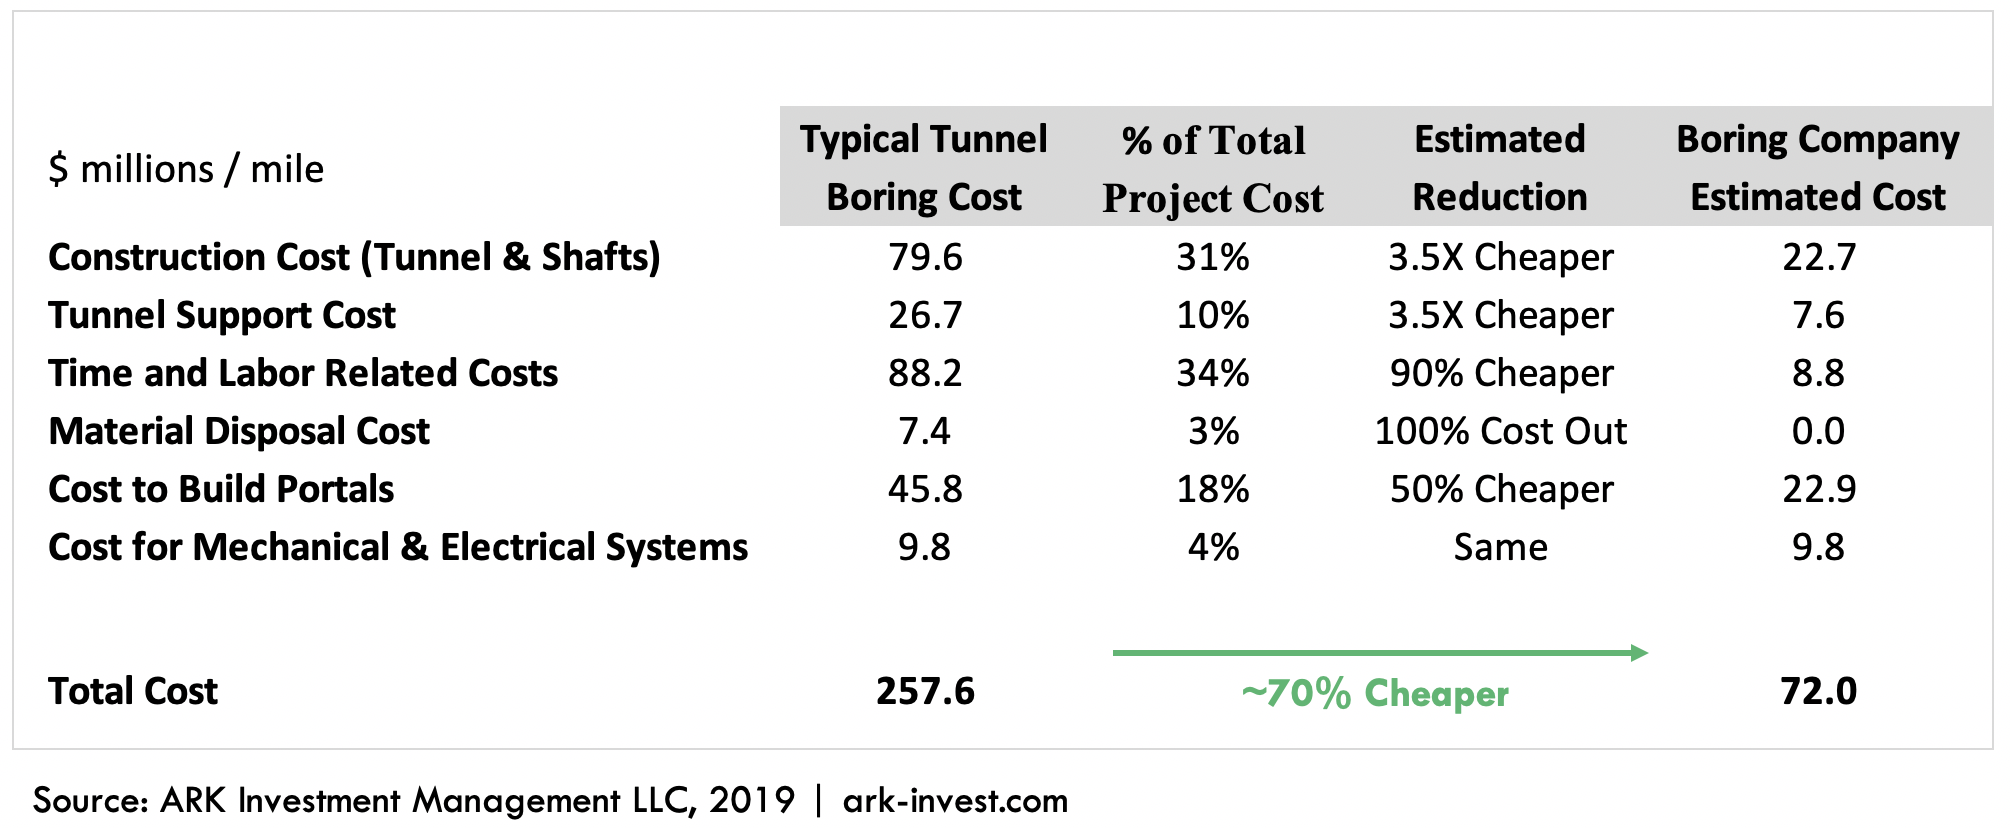 ARK Boring Company Tunnel Estimated Cost Breakdown